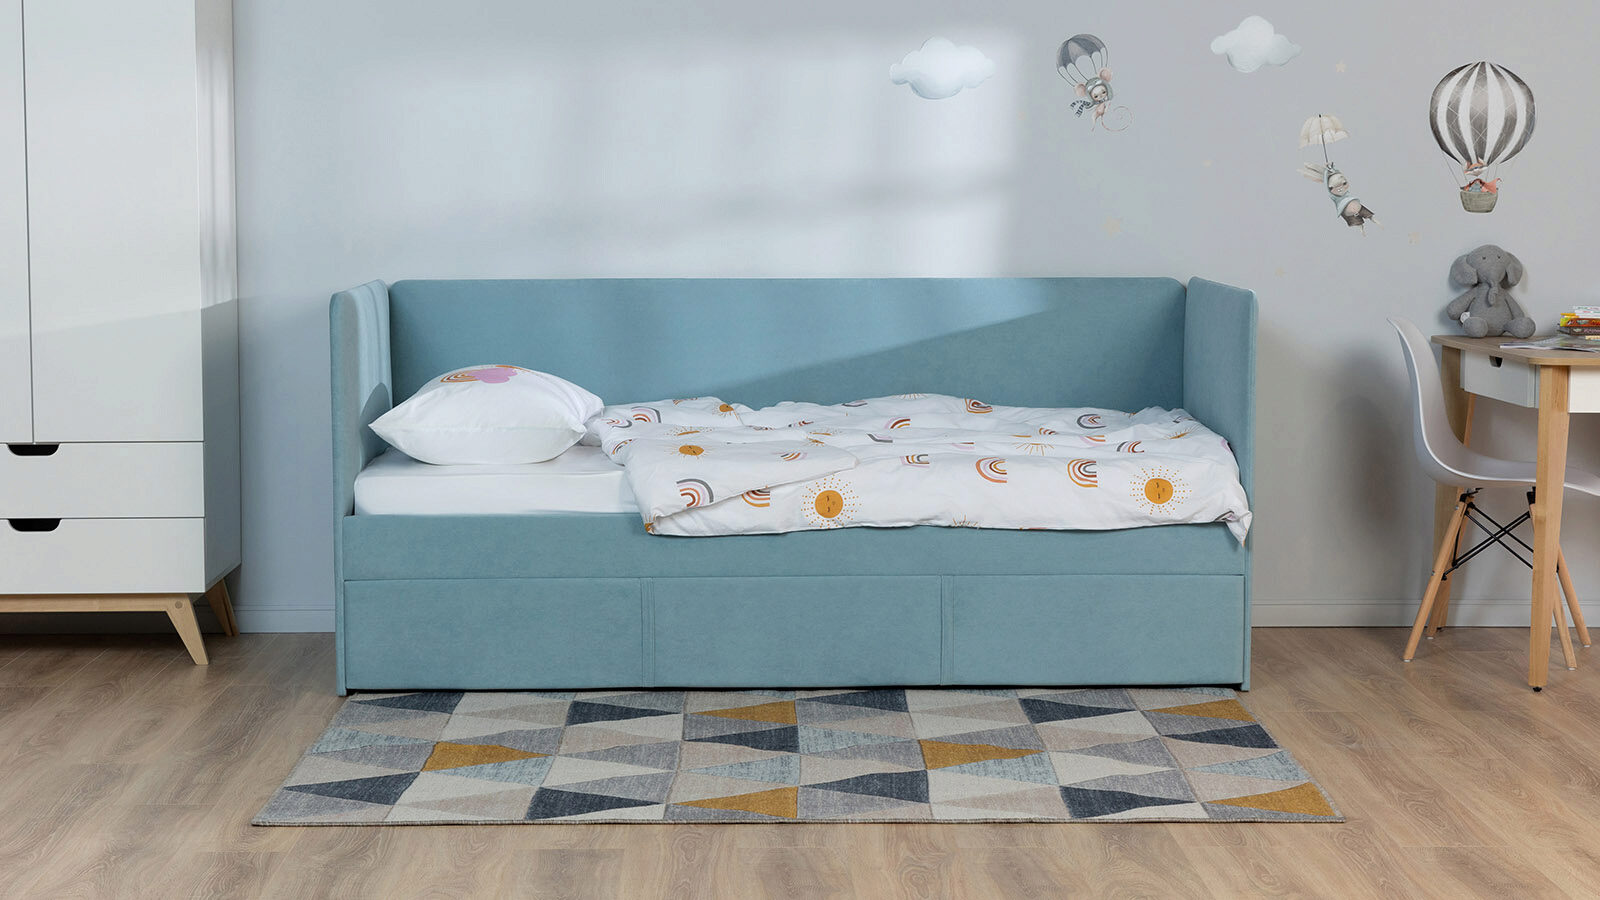 

Подростковая кровать с выкатным спальным местом Uno Duo, Uno Duo